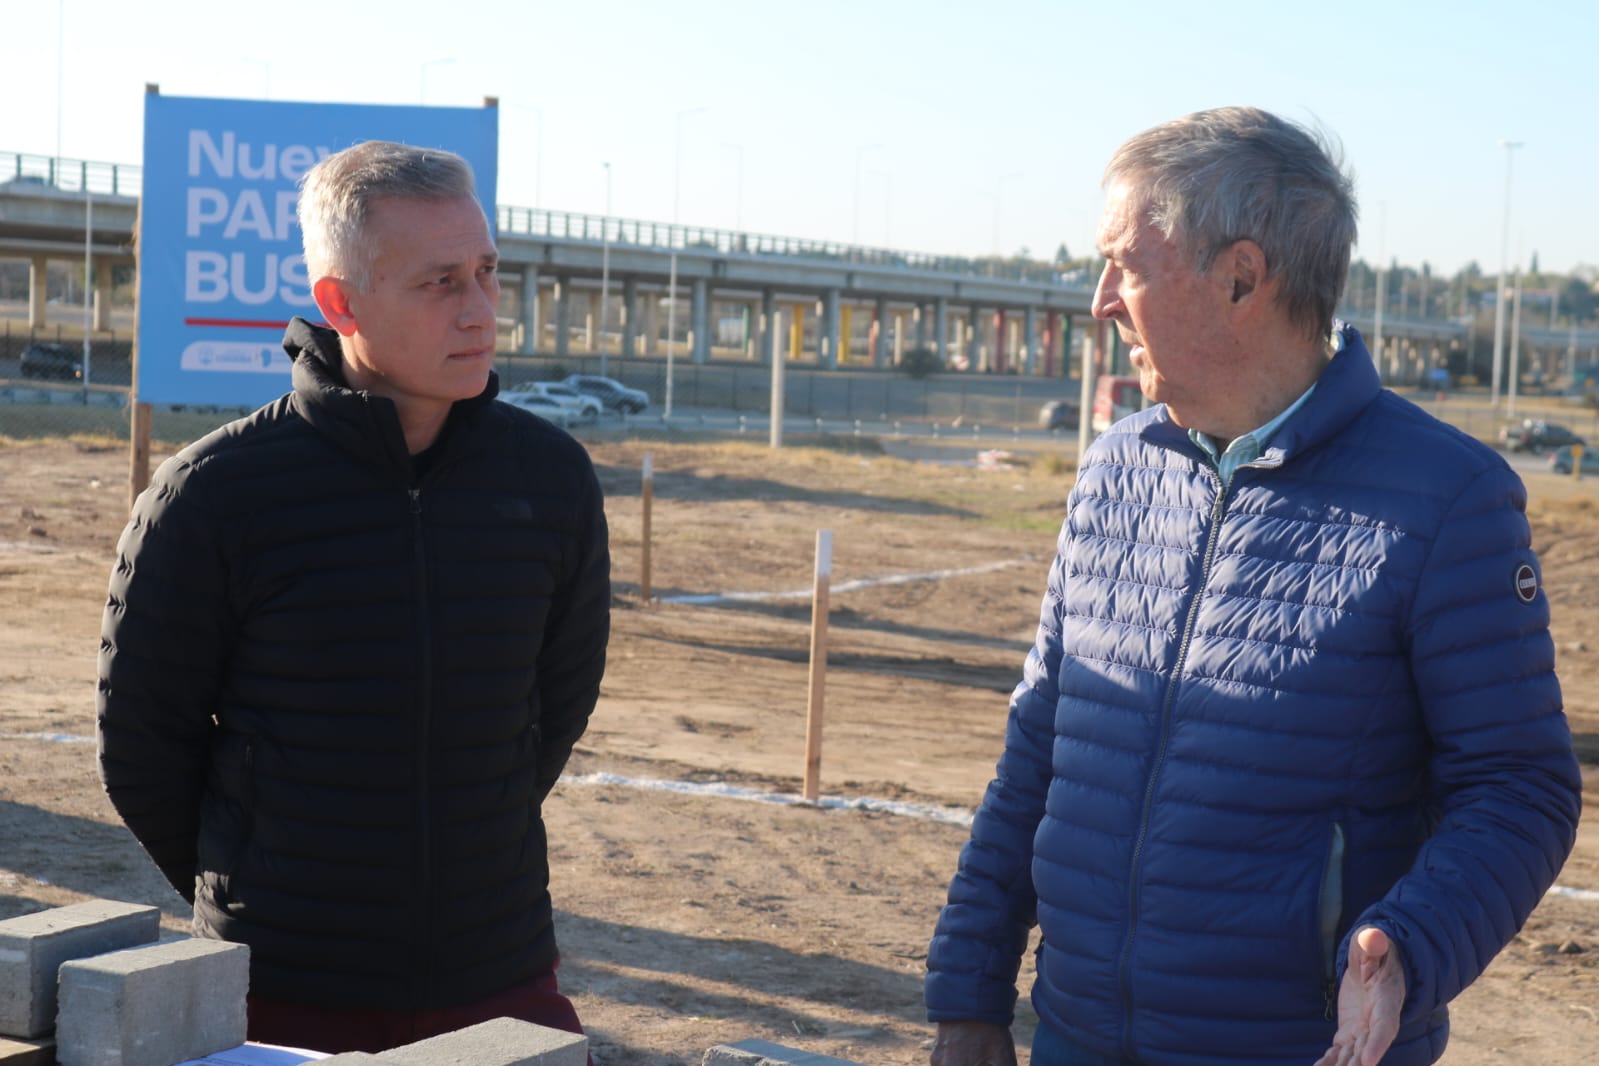 El gobernador Schiaretti recorrió junto a Avilés la obra del nuevo Parque Bustos